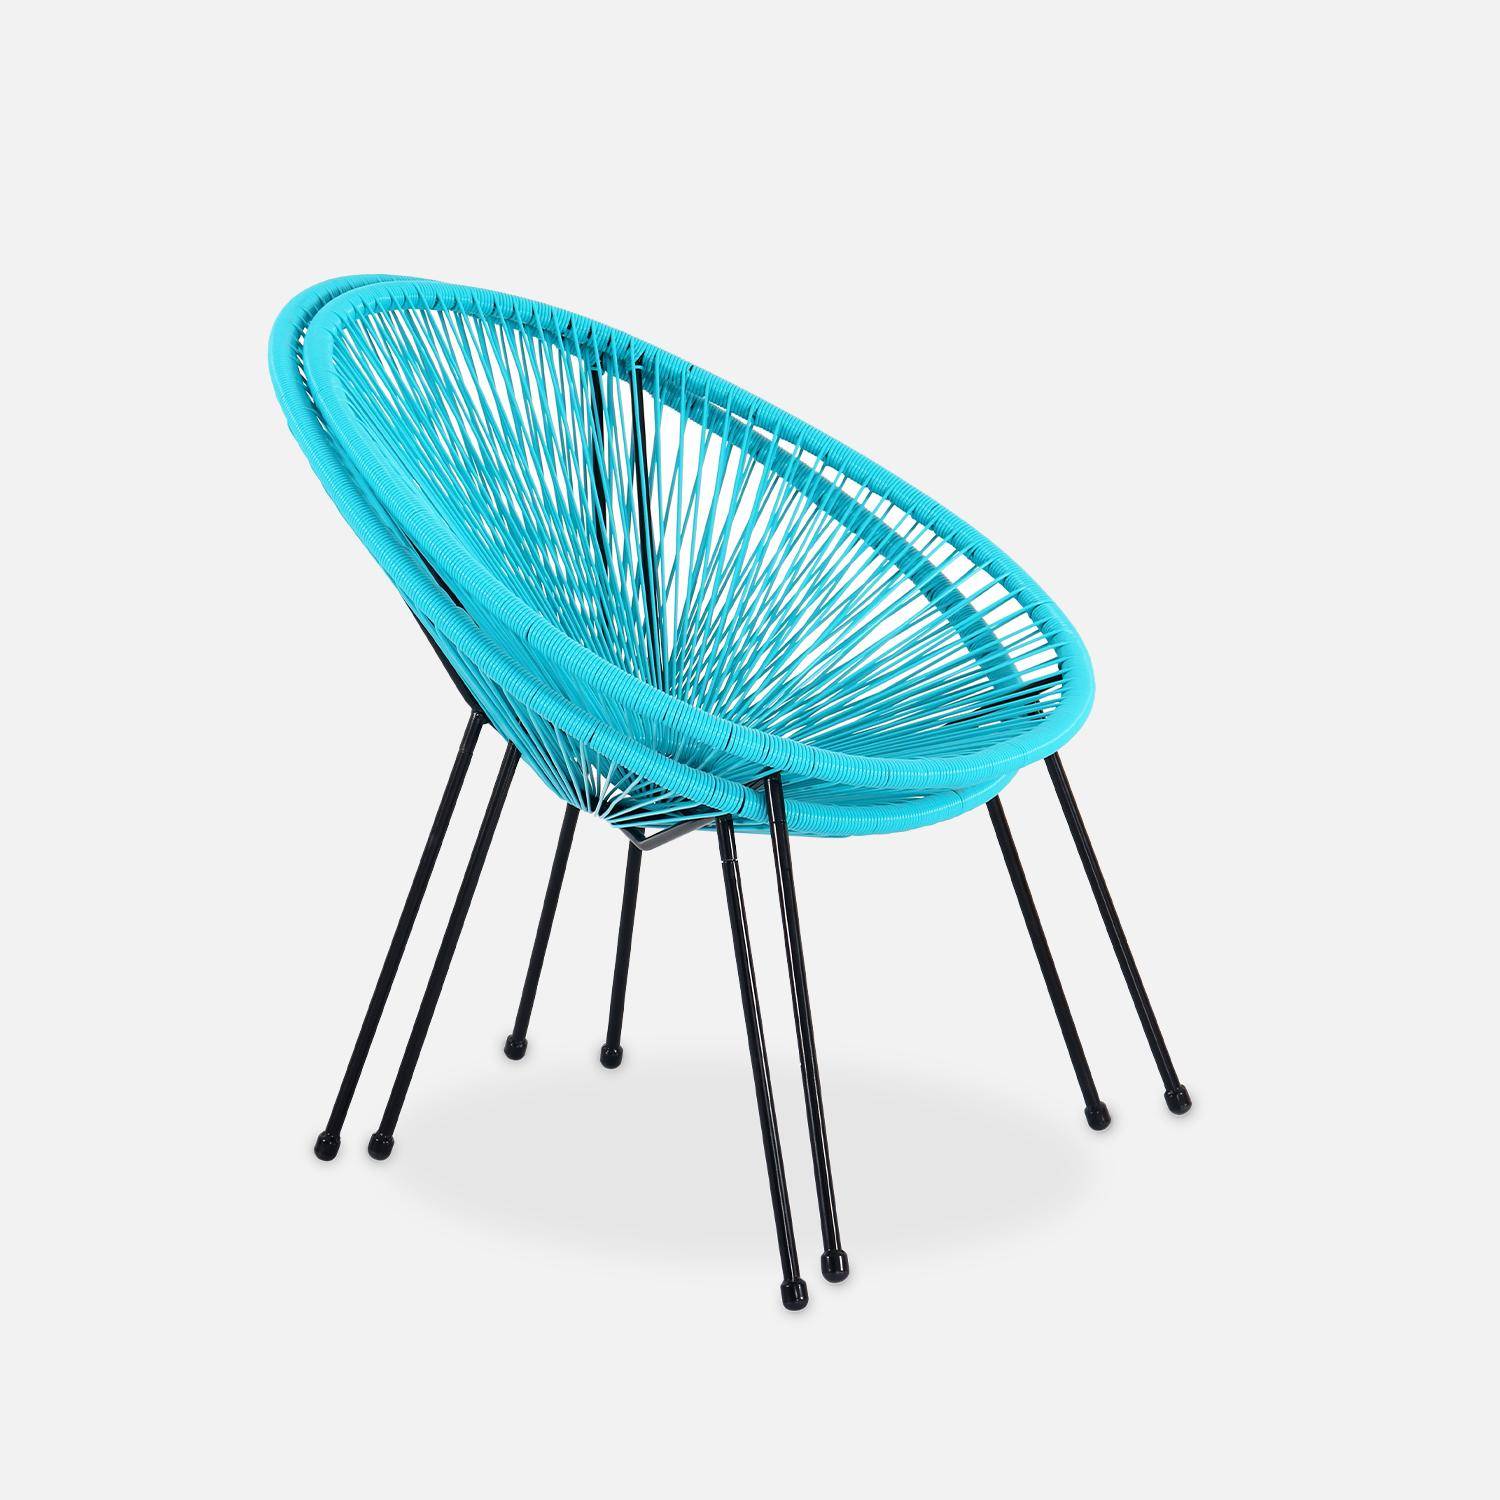 Lot de 2 fauteuils design Oeuf - Acapulco Turquoise- Fauteuils 4 pieds design rétro, cordage plastique, intérieur / extérieur Photo6